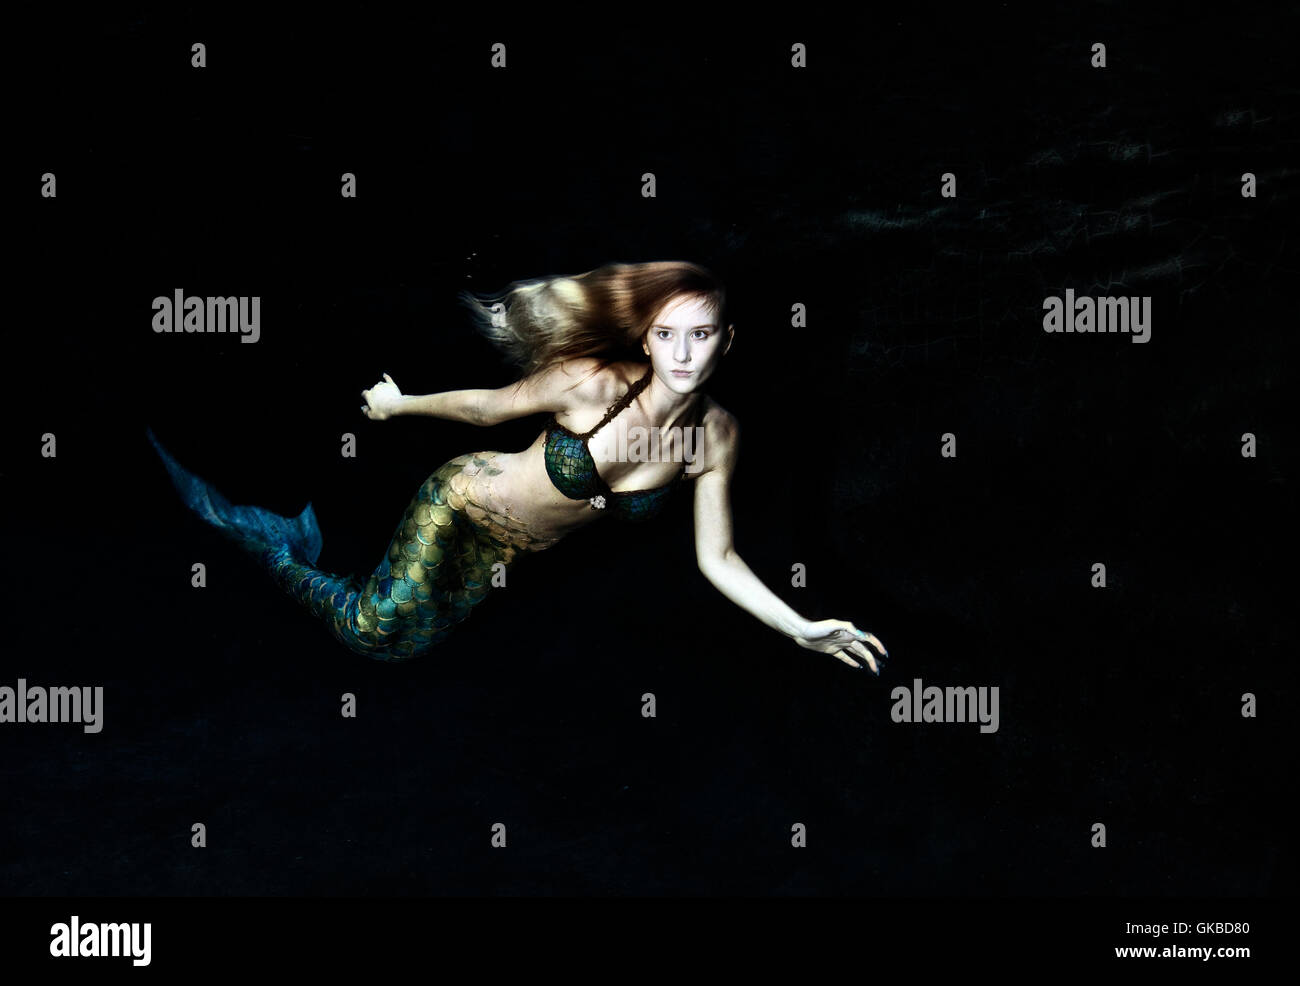 Mermaid swimming in dark water Stock Photo